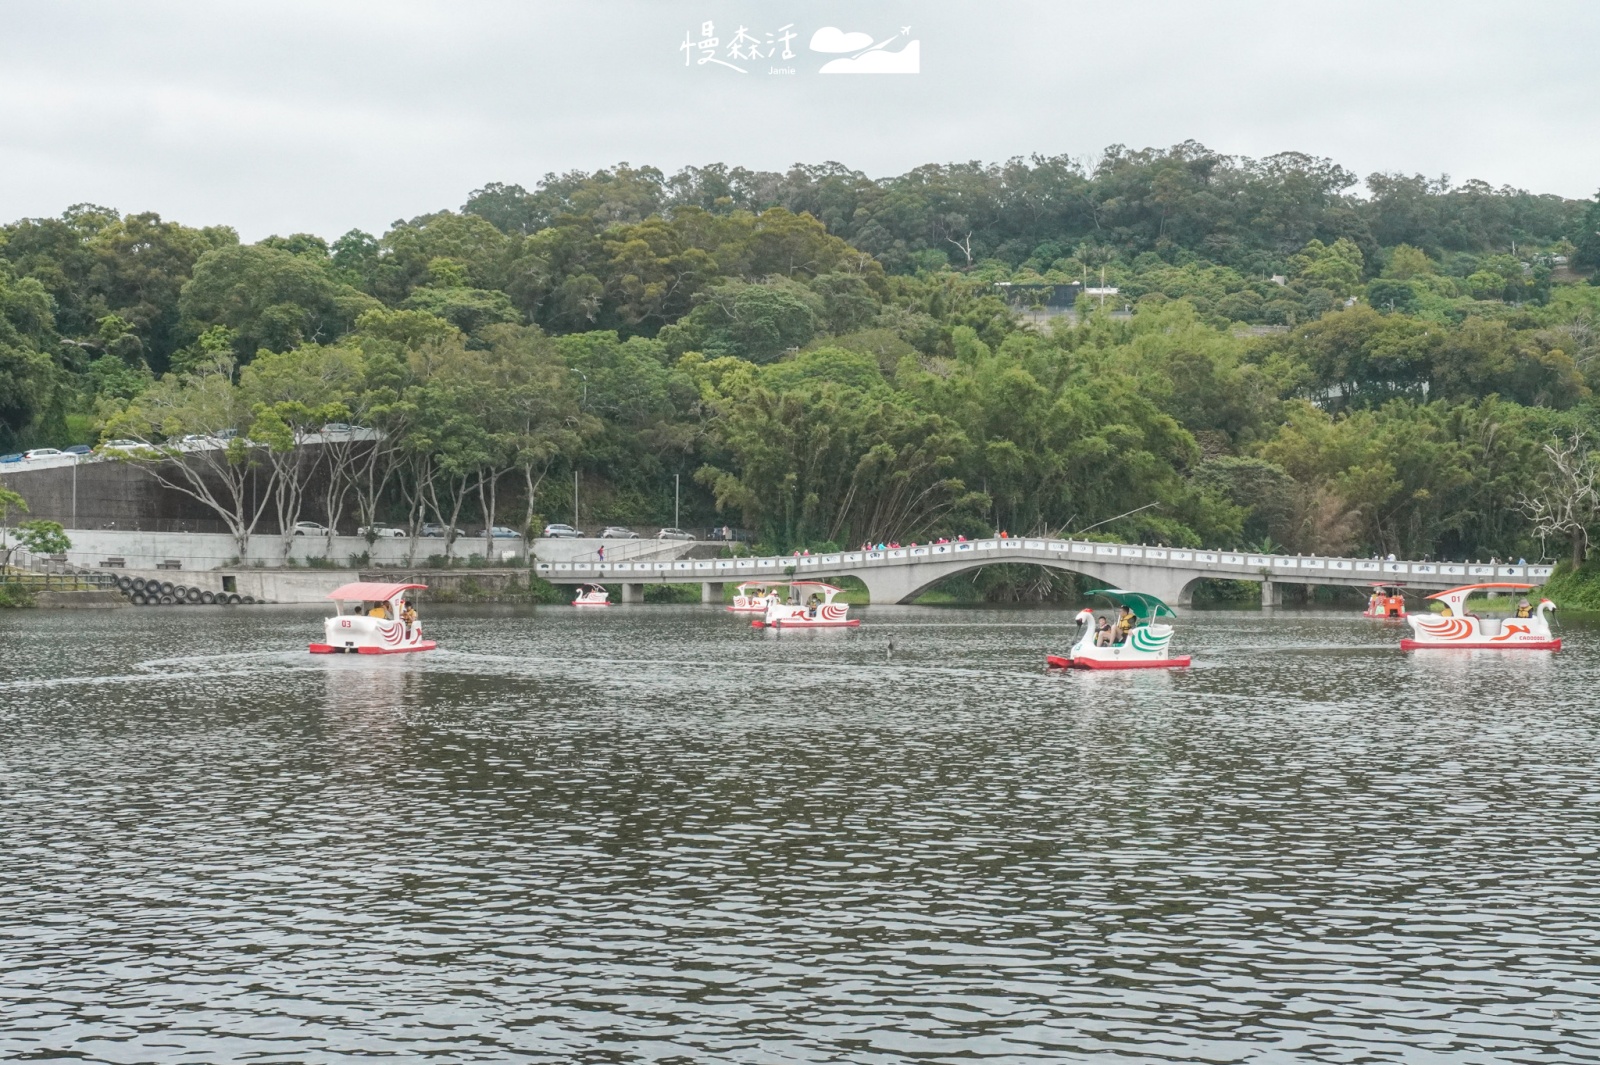 新竹市青草湖 乘坐天鵝船